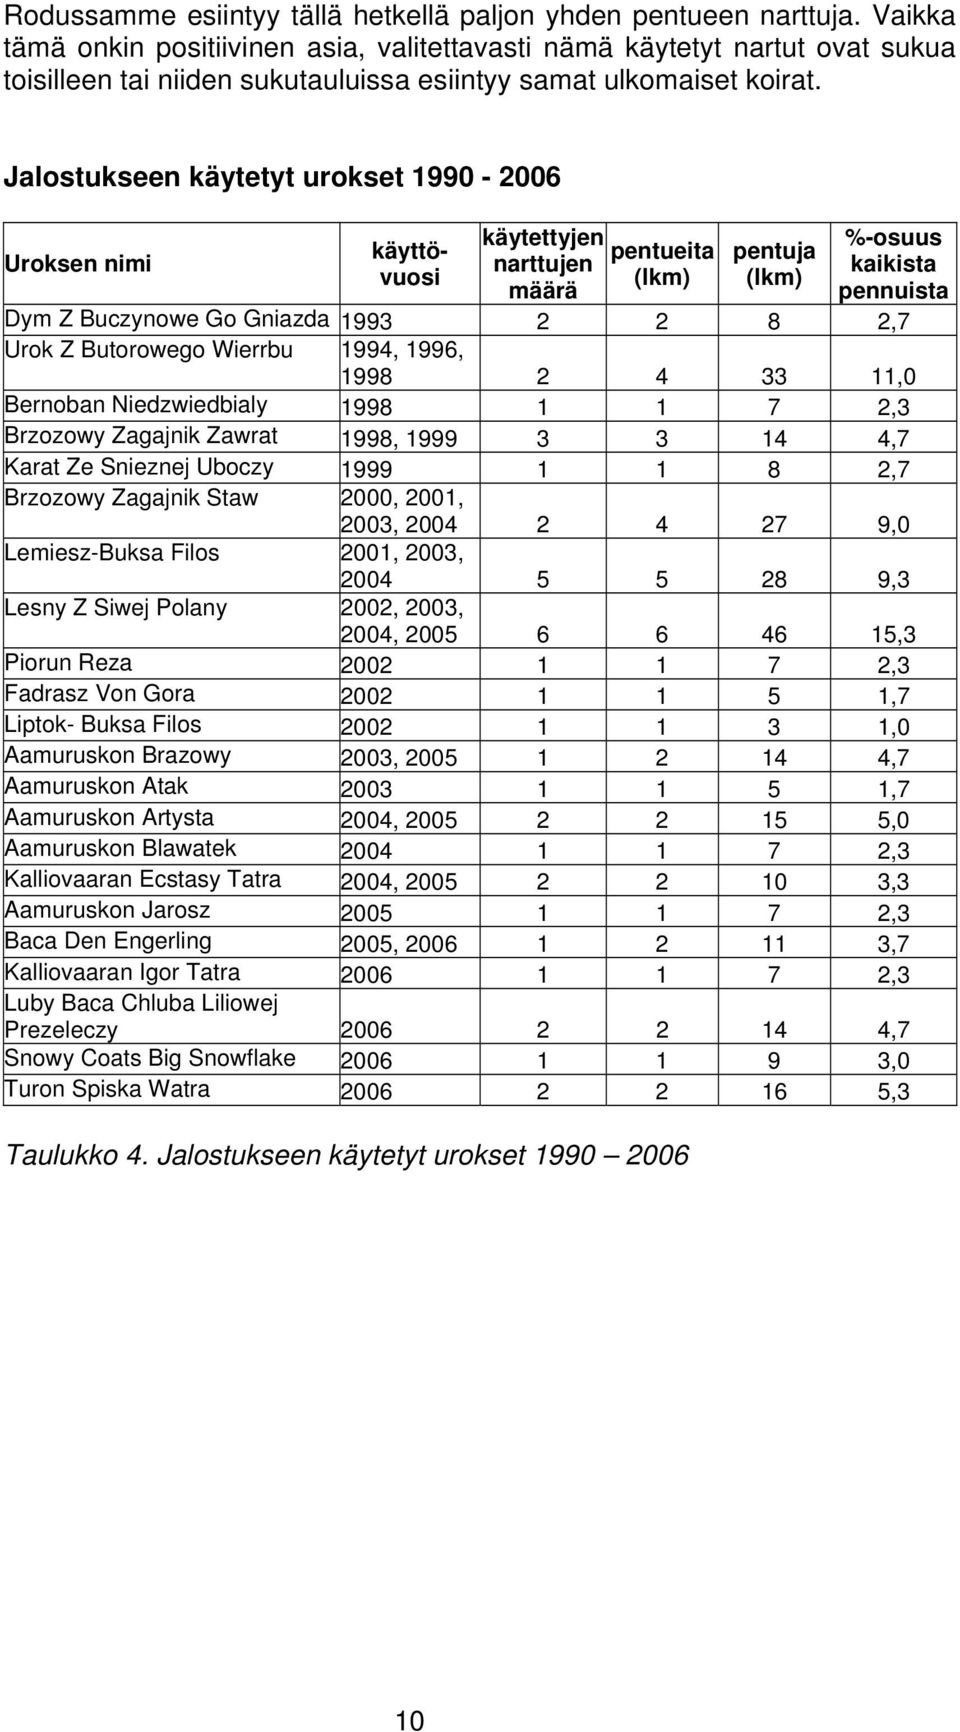 Jalostukseen käytetyt urokset 1990-2006 Uroksen nimi käyttövuosi käytettyjen narttujen määrä pentueita (lkm) pentuja (lkm) %-osuus kaikista pennuista Dym Z Buczynowe Go Gniazda 1993 2 2 8 2,7 Urok Z